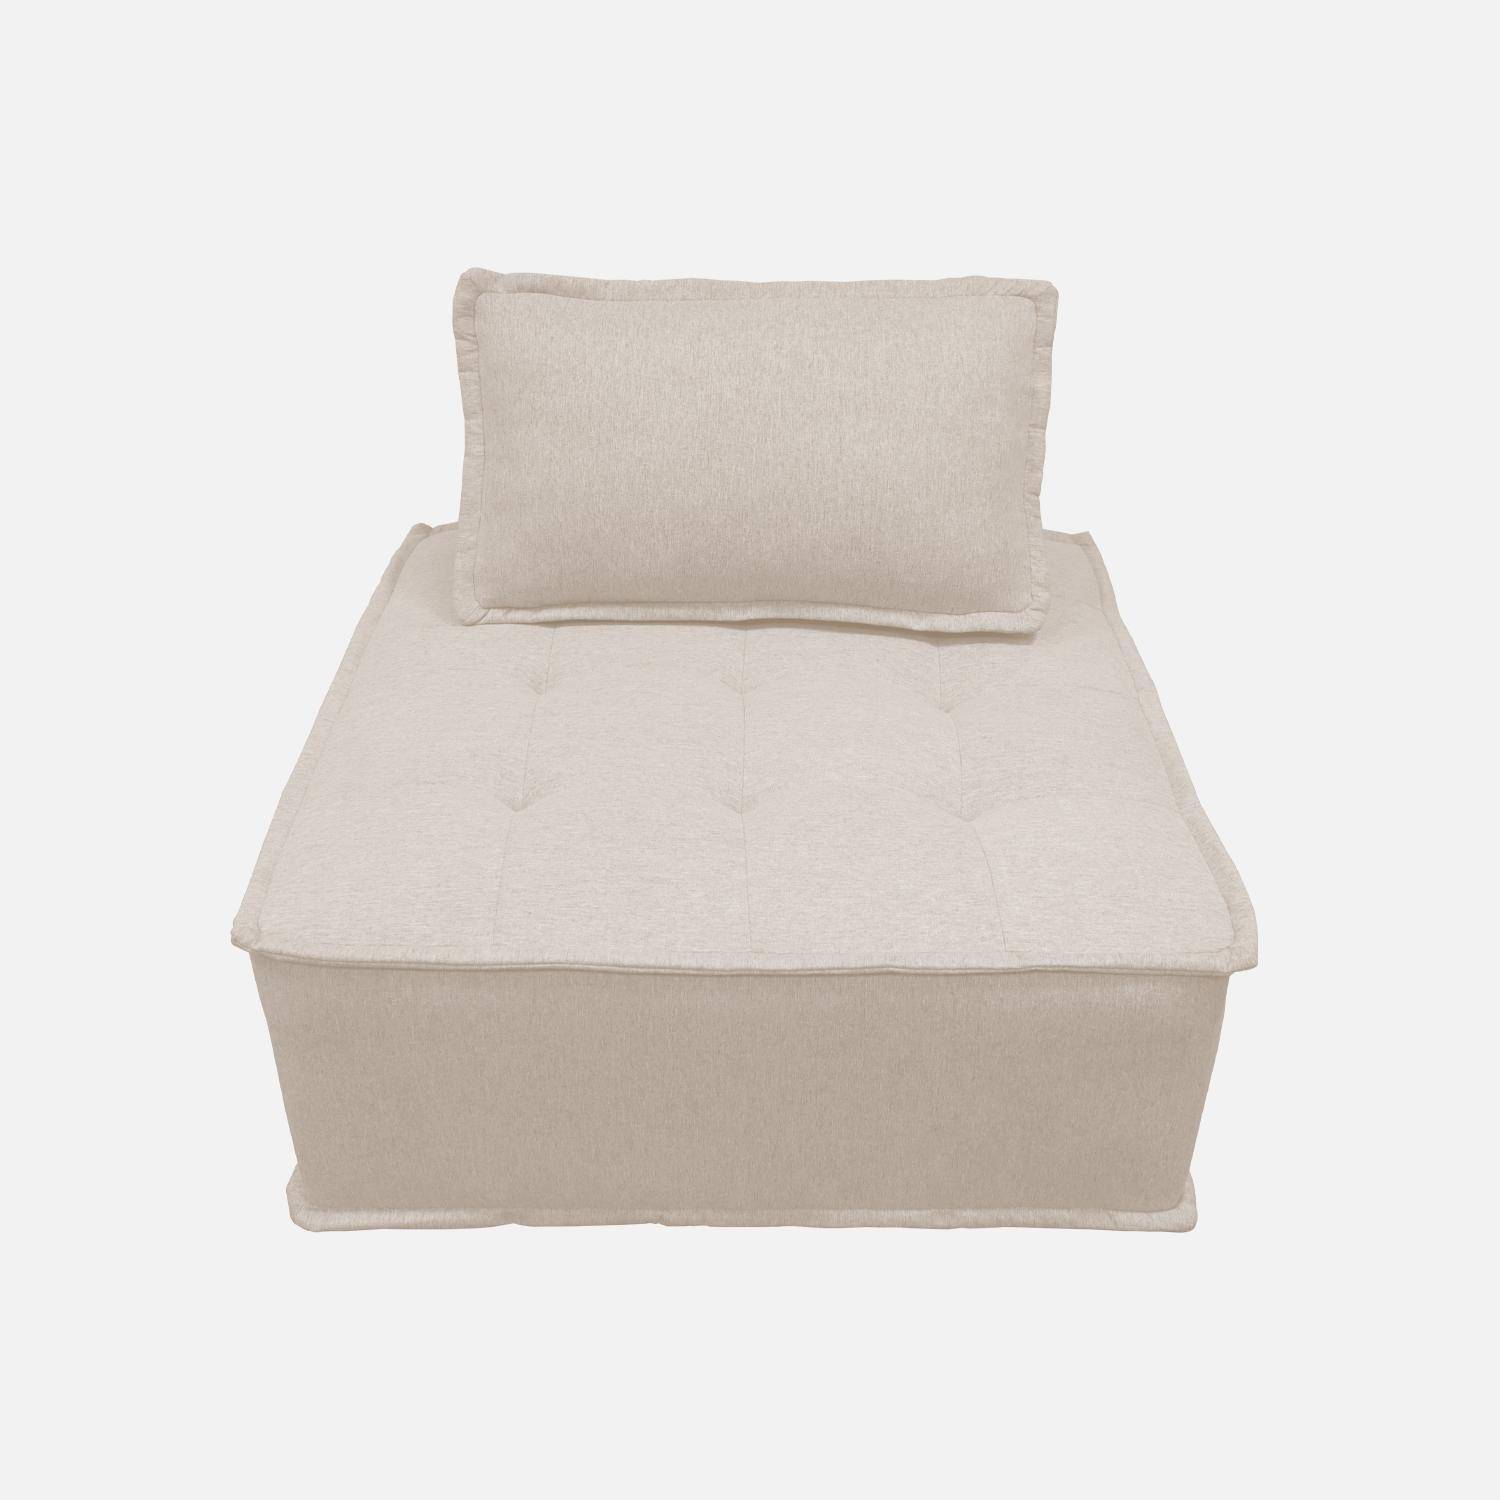 Modulaire fauteuil in crèmekleurige stof met kussen Photo6